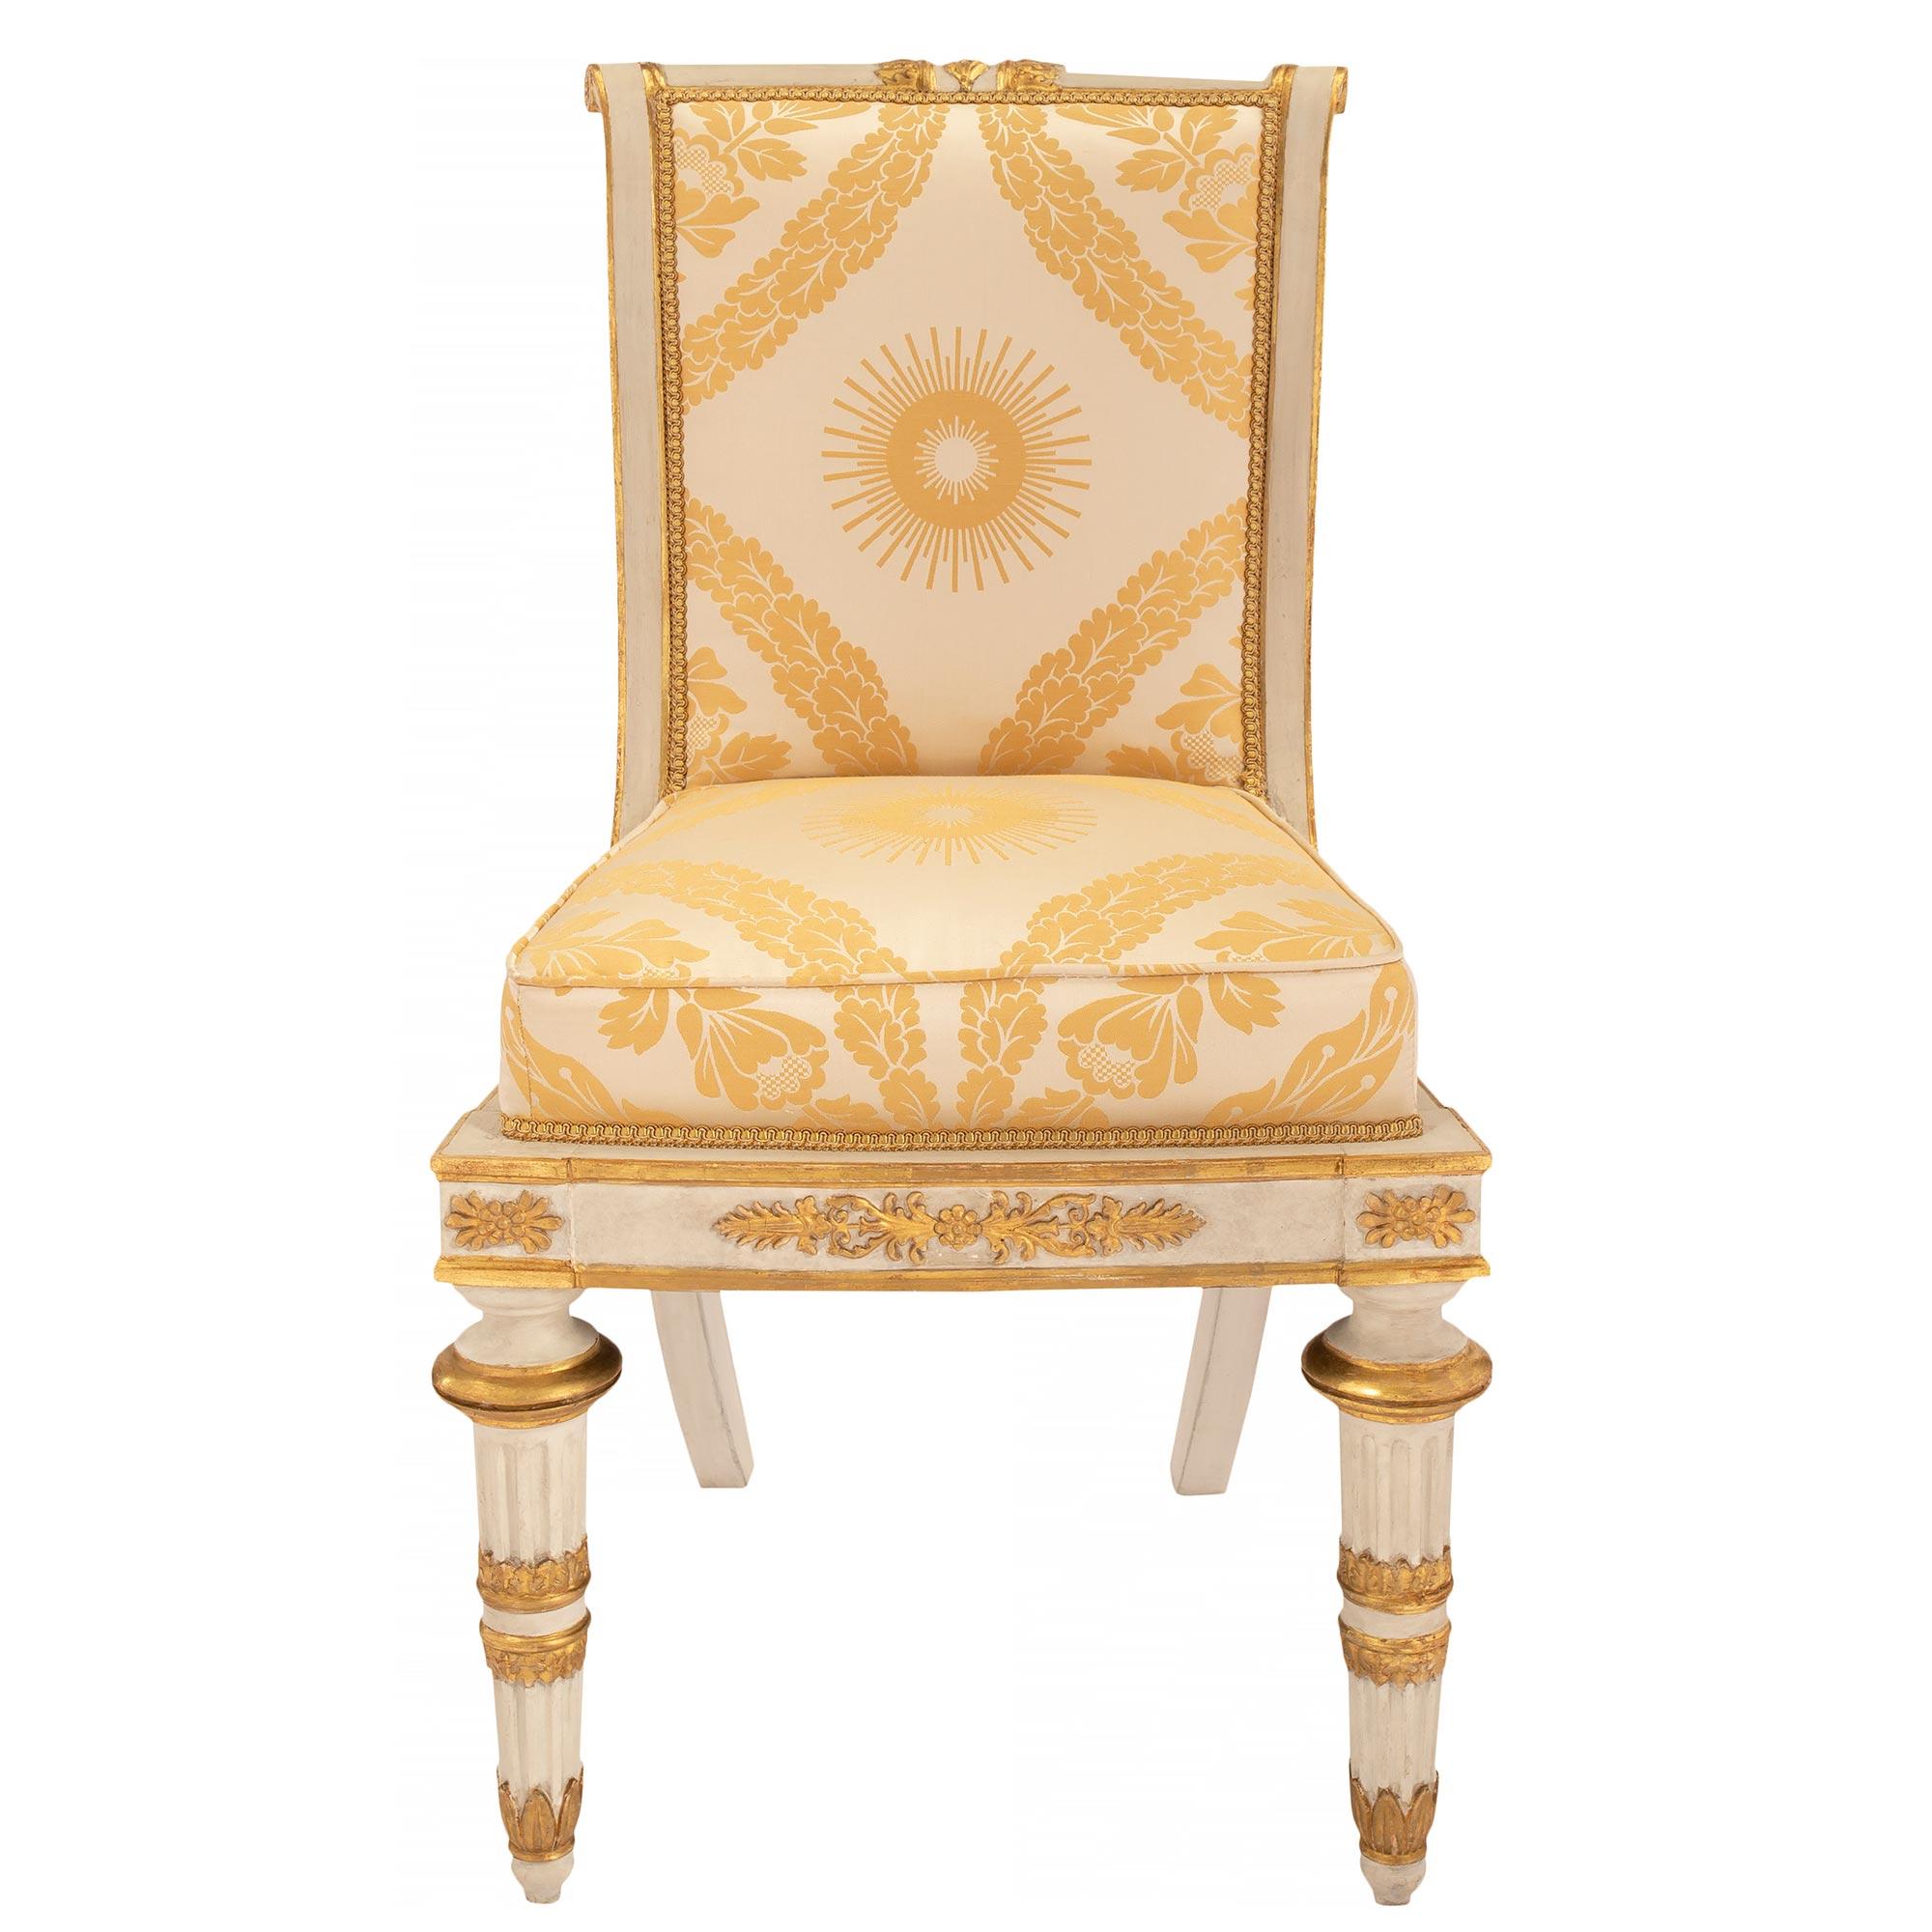 Ein auffälliger und vollständiger Satz von acht italienischen Esszimmerstühlen aus der Toskana im neoklassizistischen Stil des frühen 19. Jeder Stuhl steht auf patinierten, kannelierten Beinen mit feinen, topieförmigen Füßen und hübschen,